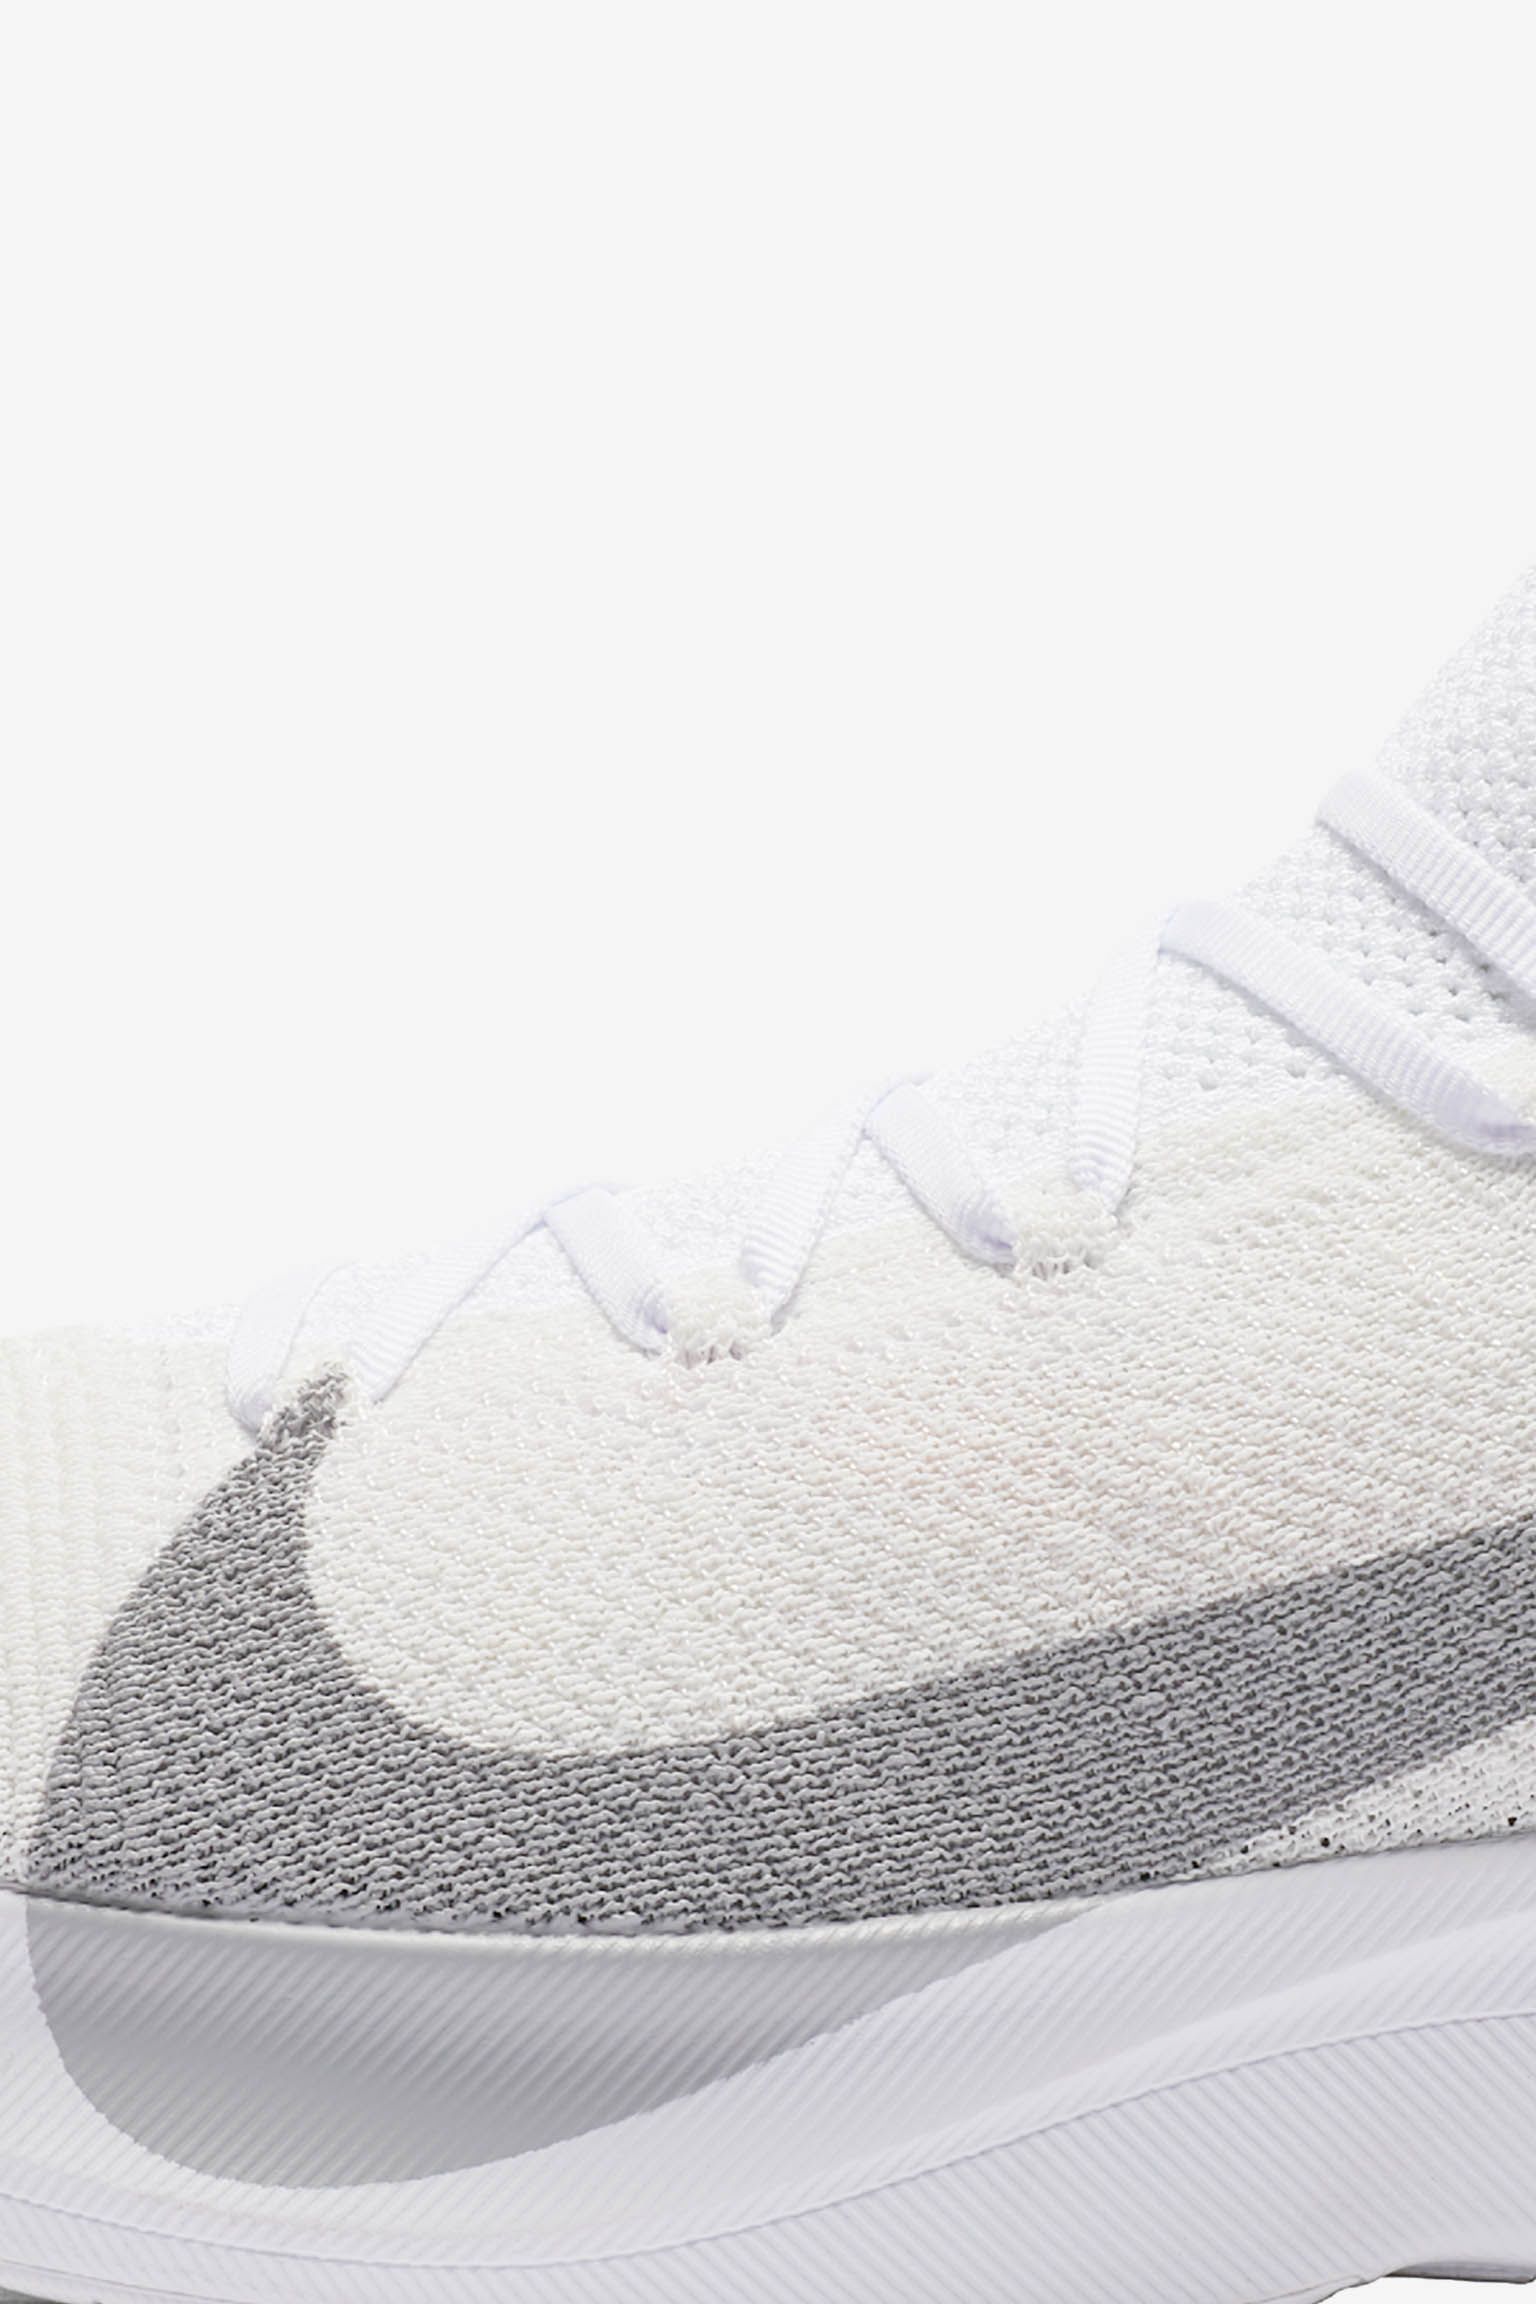 Nike React Vapor Street Flyknit 'White & Wolf Grey' Release Date